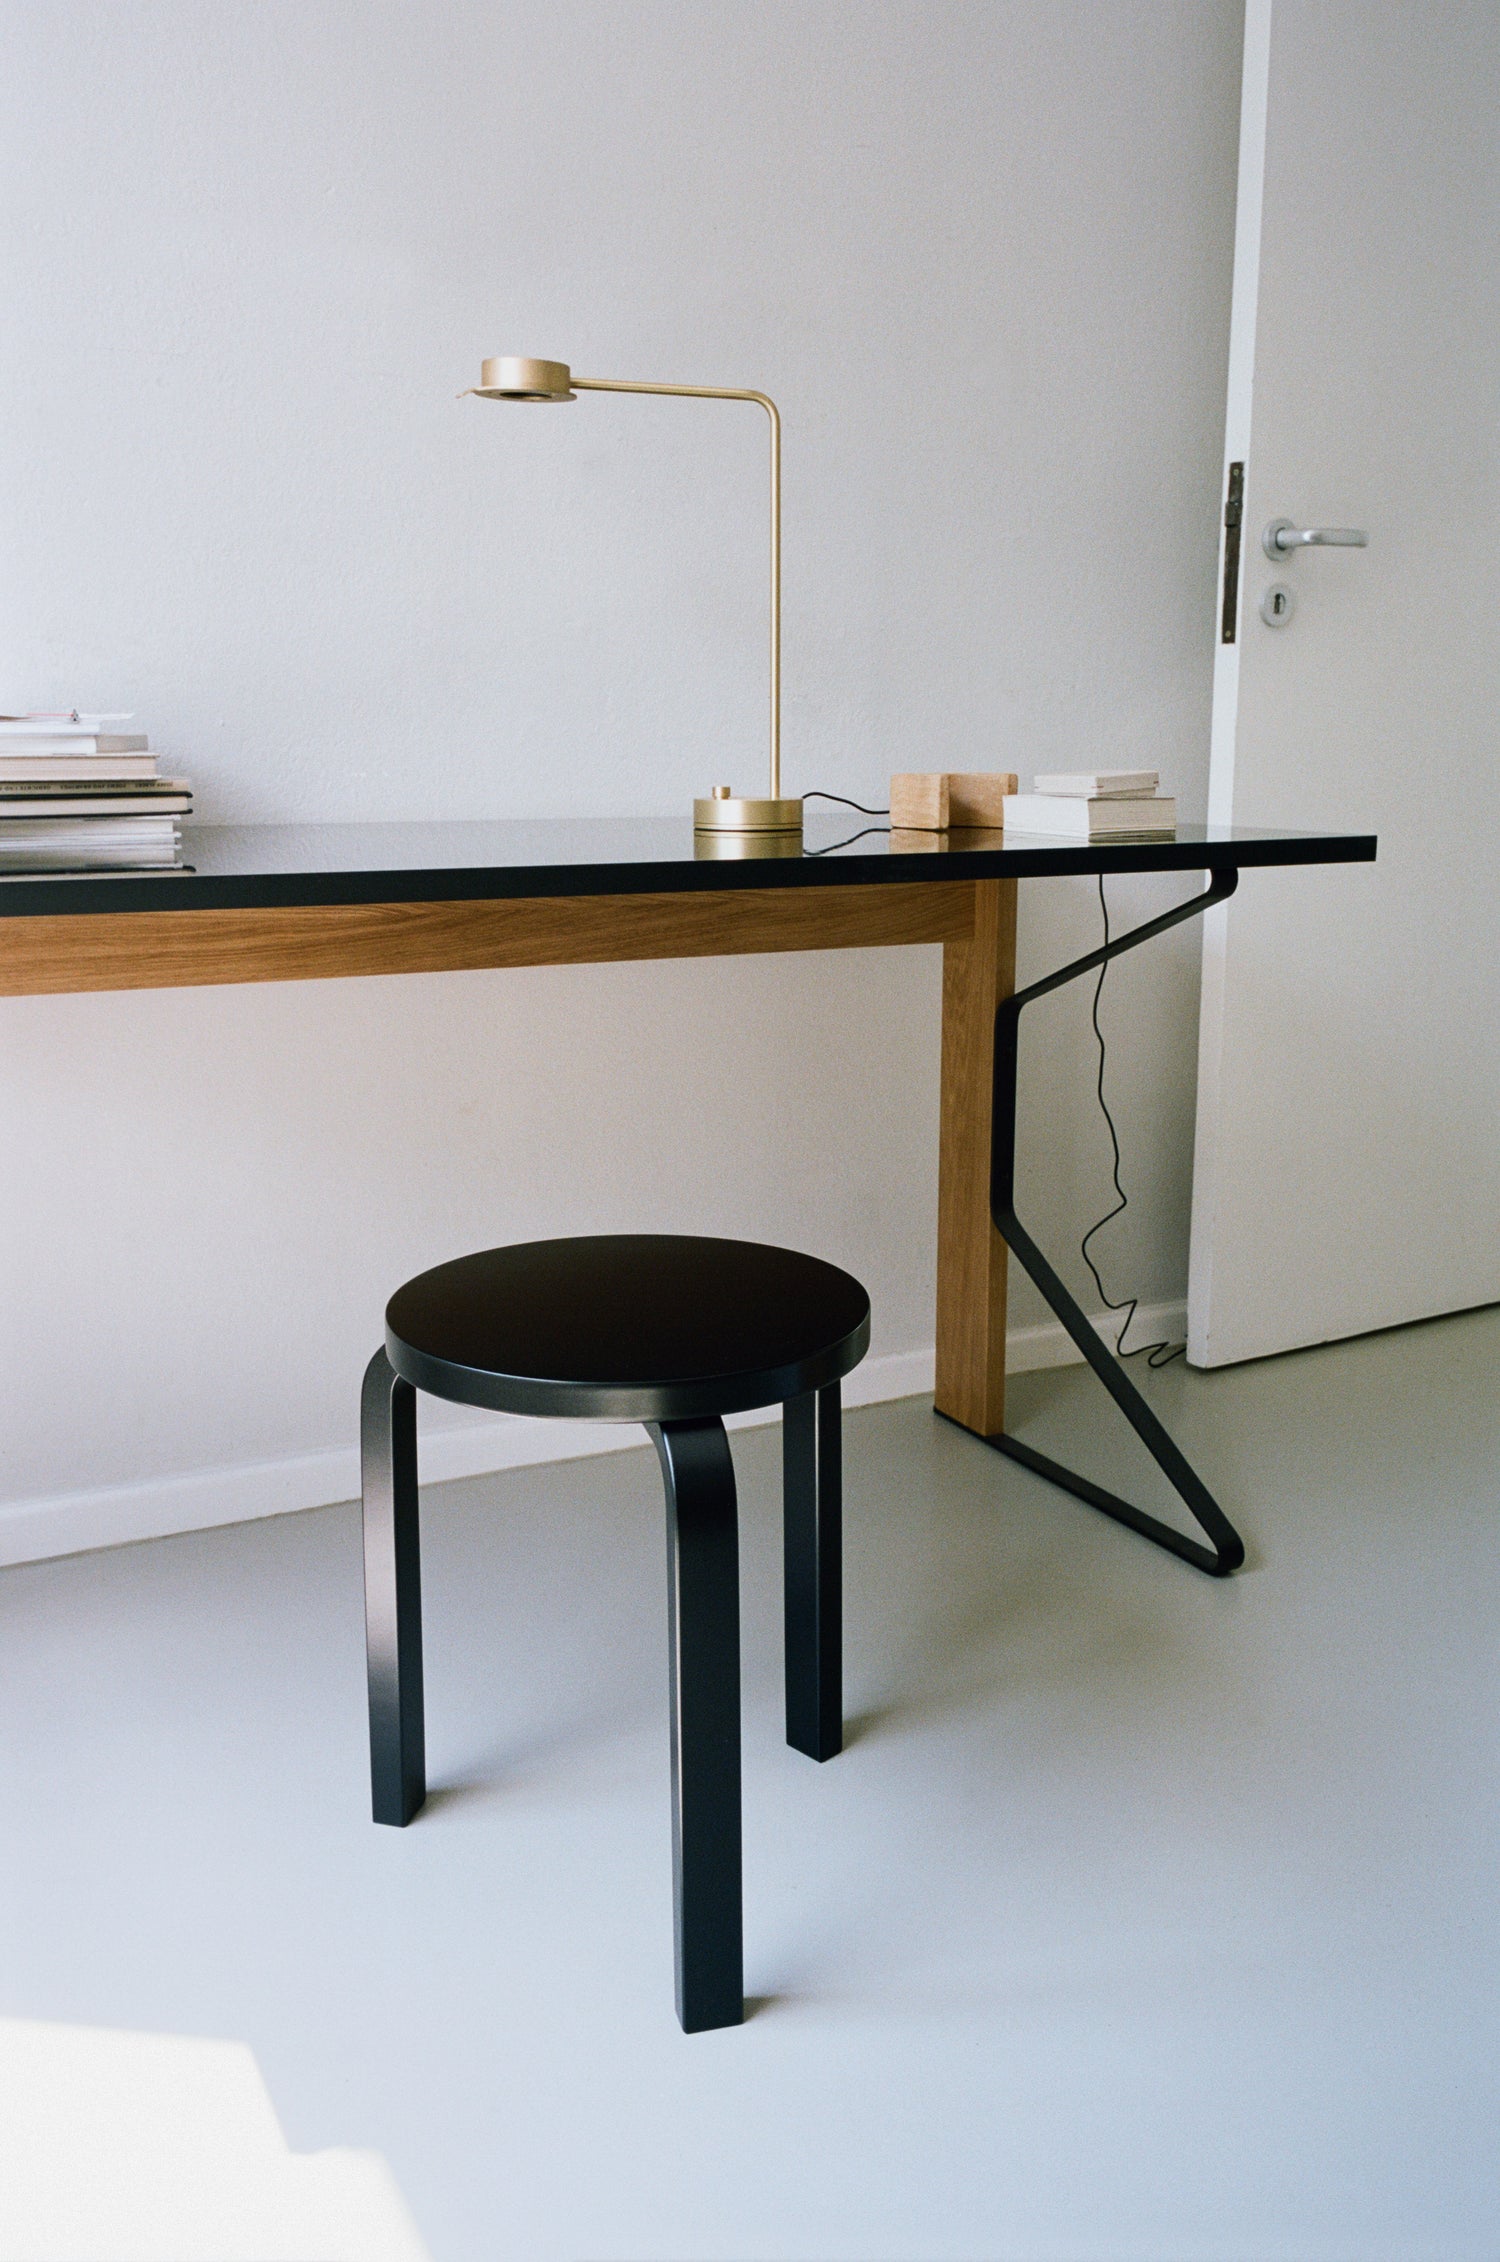 Bilde av skrivebordet Kaari Desk fra Artek på et hjemmekontor. Skrivebordet står sammen med den ikoniske krakken Stool60 fra Artek.